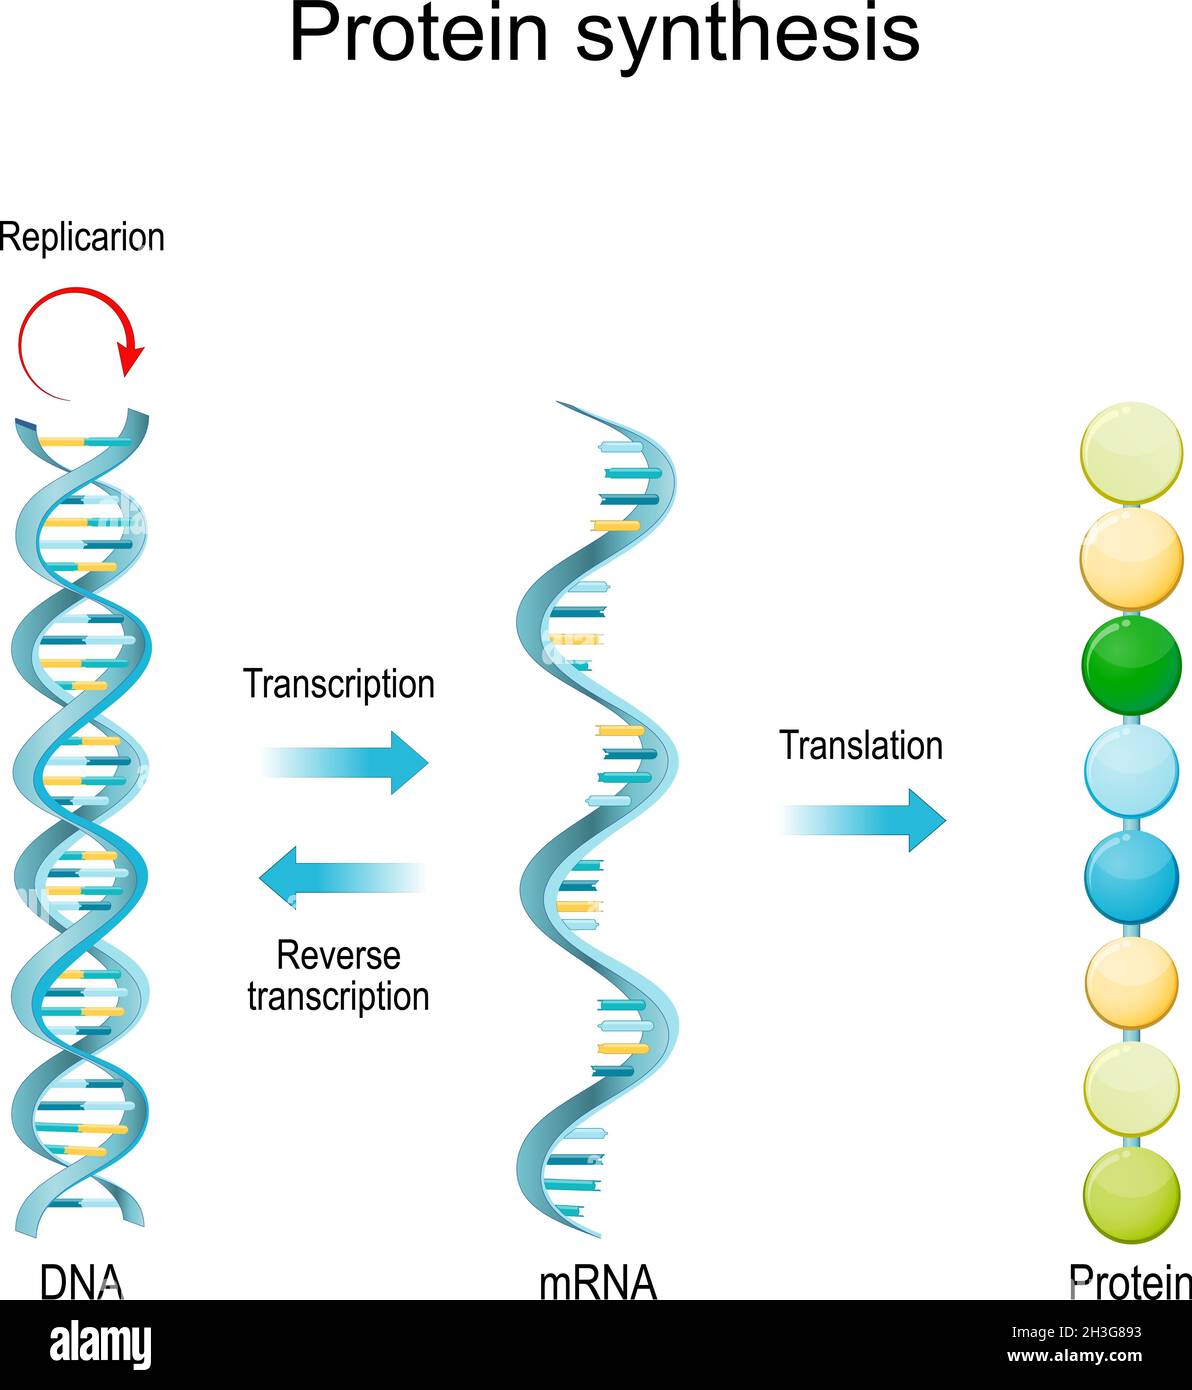 Réplication de l'ADN, ARN, ARNm, synthèse des protéines, transcription et traduction.Fonctions biologiques de l'ADN.Gènes et génomes.Code génétique Illustration de Vecteur